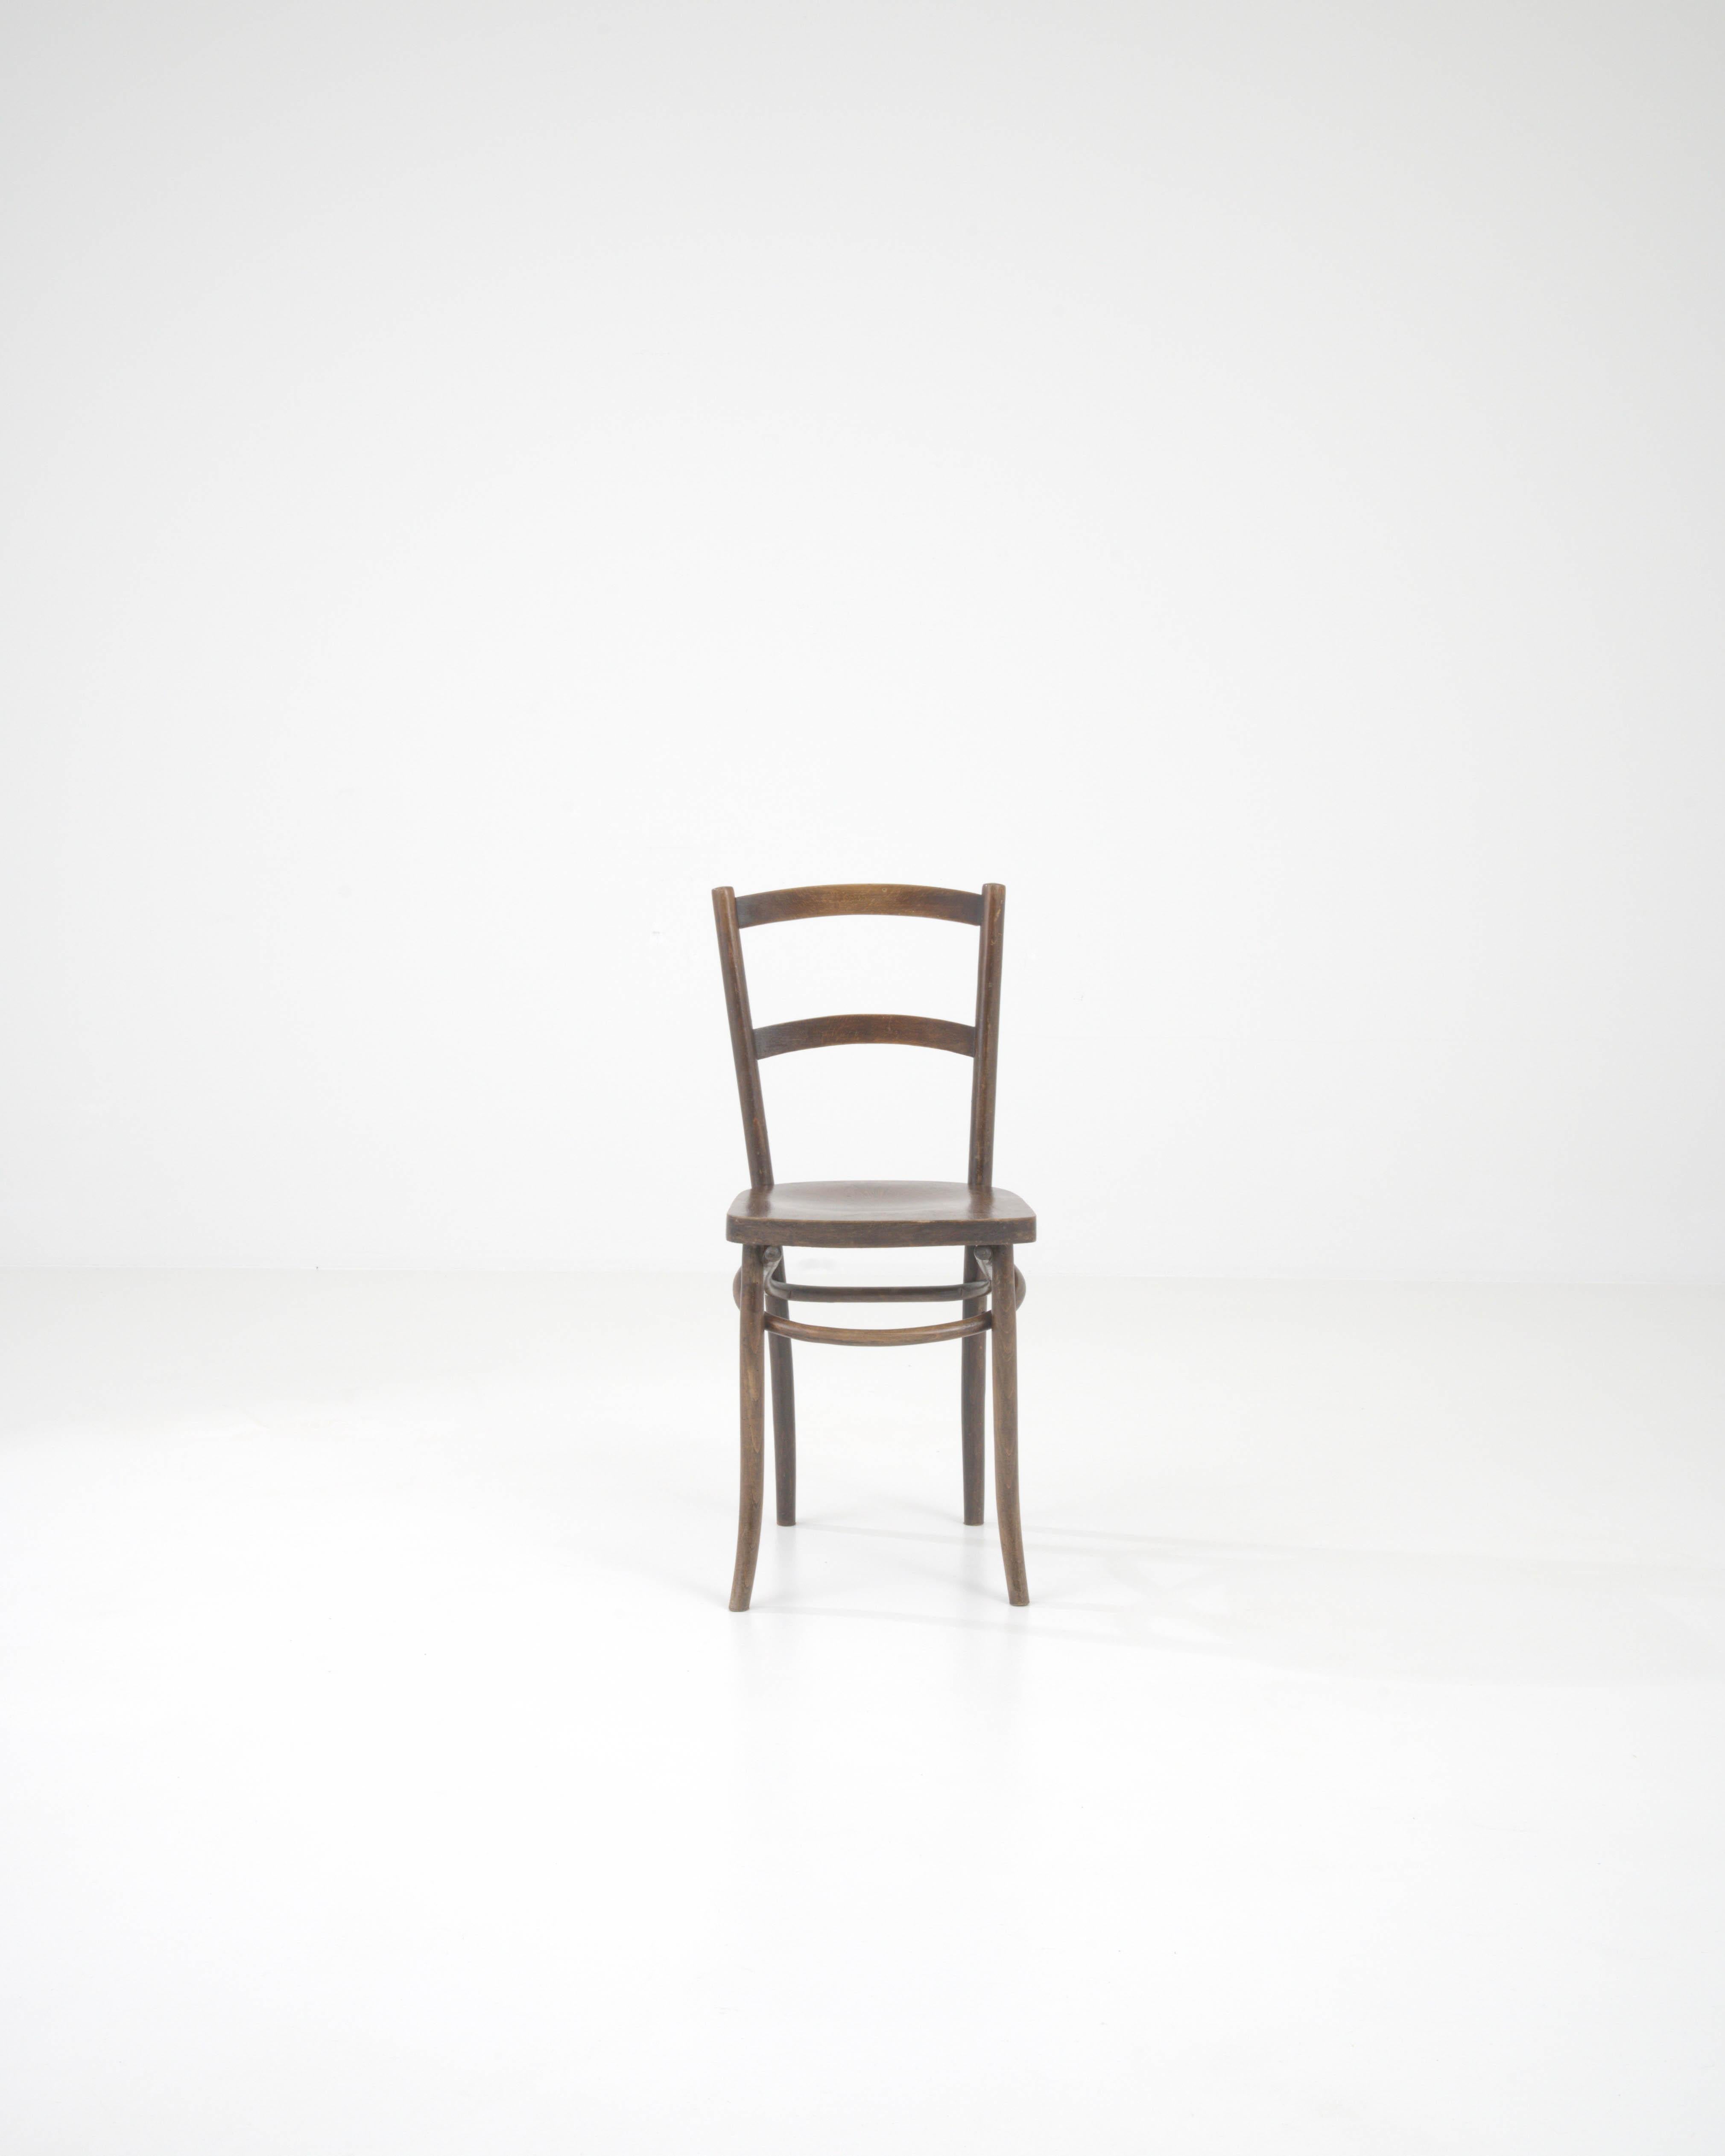 La chaise en bois française du 20e siècle est l'incarnation de l'élégance intemporelle et de l'artisanat d'antan. Conçue avec un clin d'œil à l'esthétique classique, cette chaise présente une patine chaude et riche qui murmure des histoires